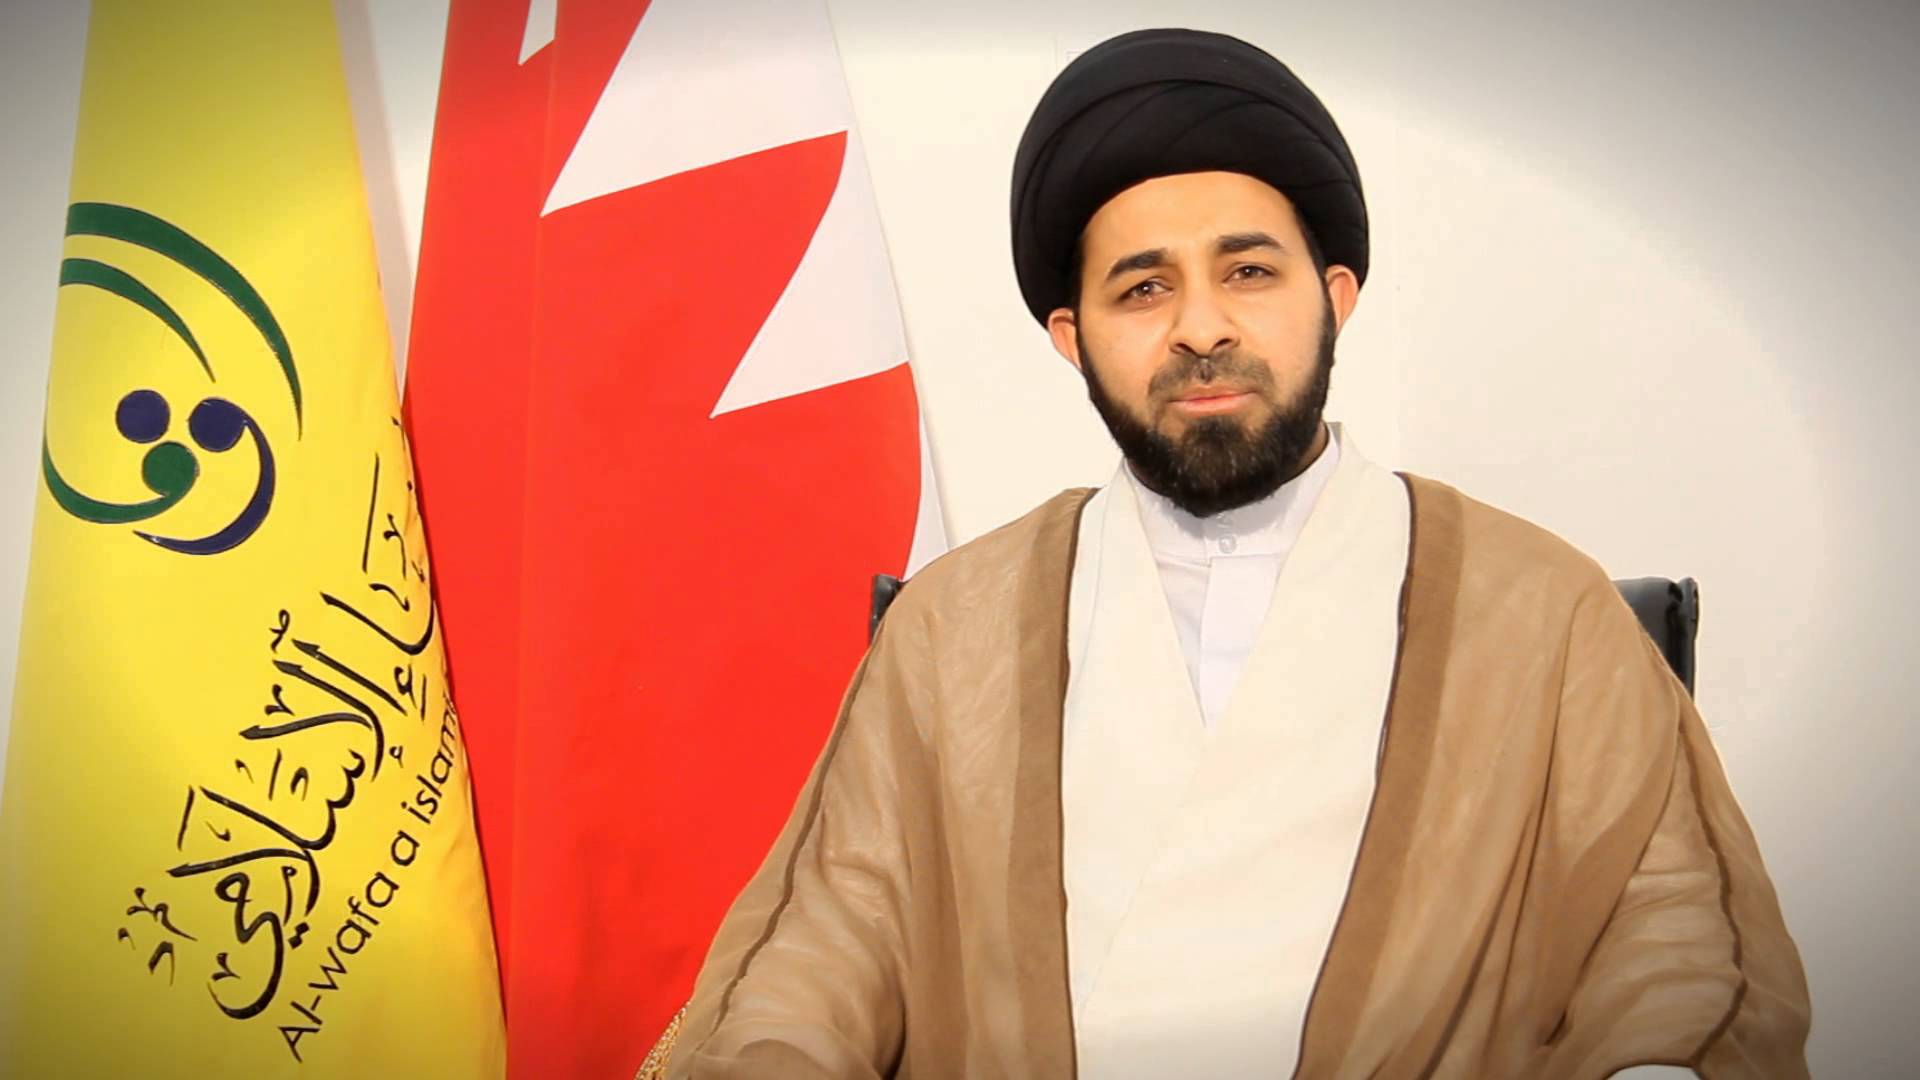  السلطات البحرينية تريد علمنة المجتمع بسن قوانين غير اسلامية